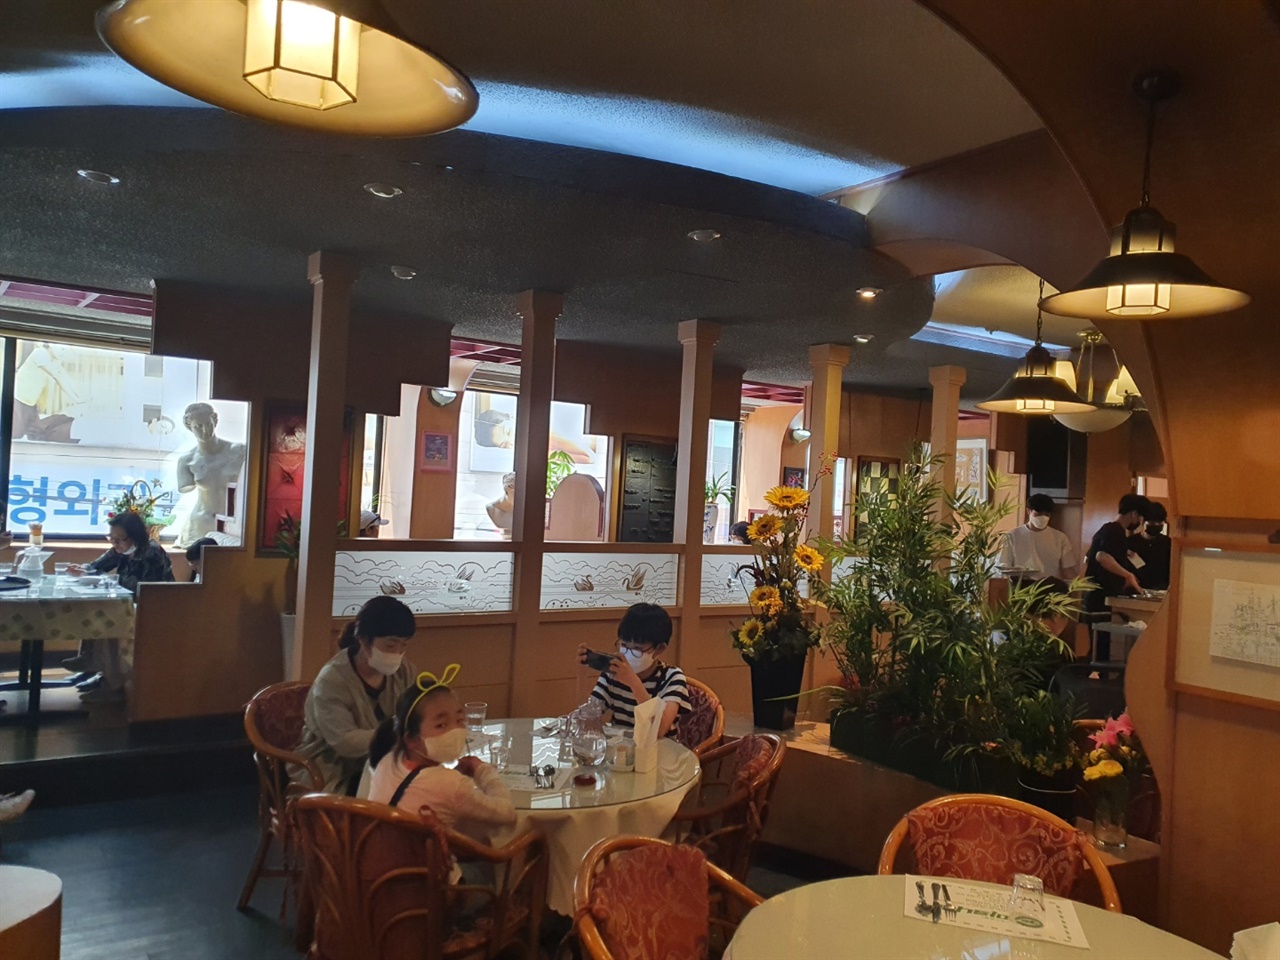 안성중앙시장에서 머지 않은 거리에 예전부터 현재까지 안성시민들의 레스토랑으로 자리매김한 마로니에 레스토랑이 있다. 인테리어 부터 접대방식까지 그때 그 시절의 추억을 떠오르게 만든다.